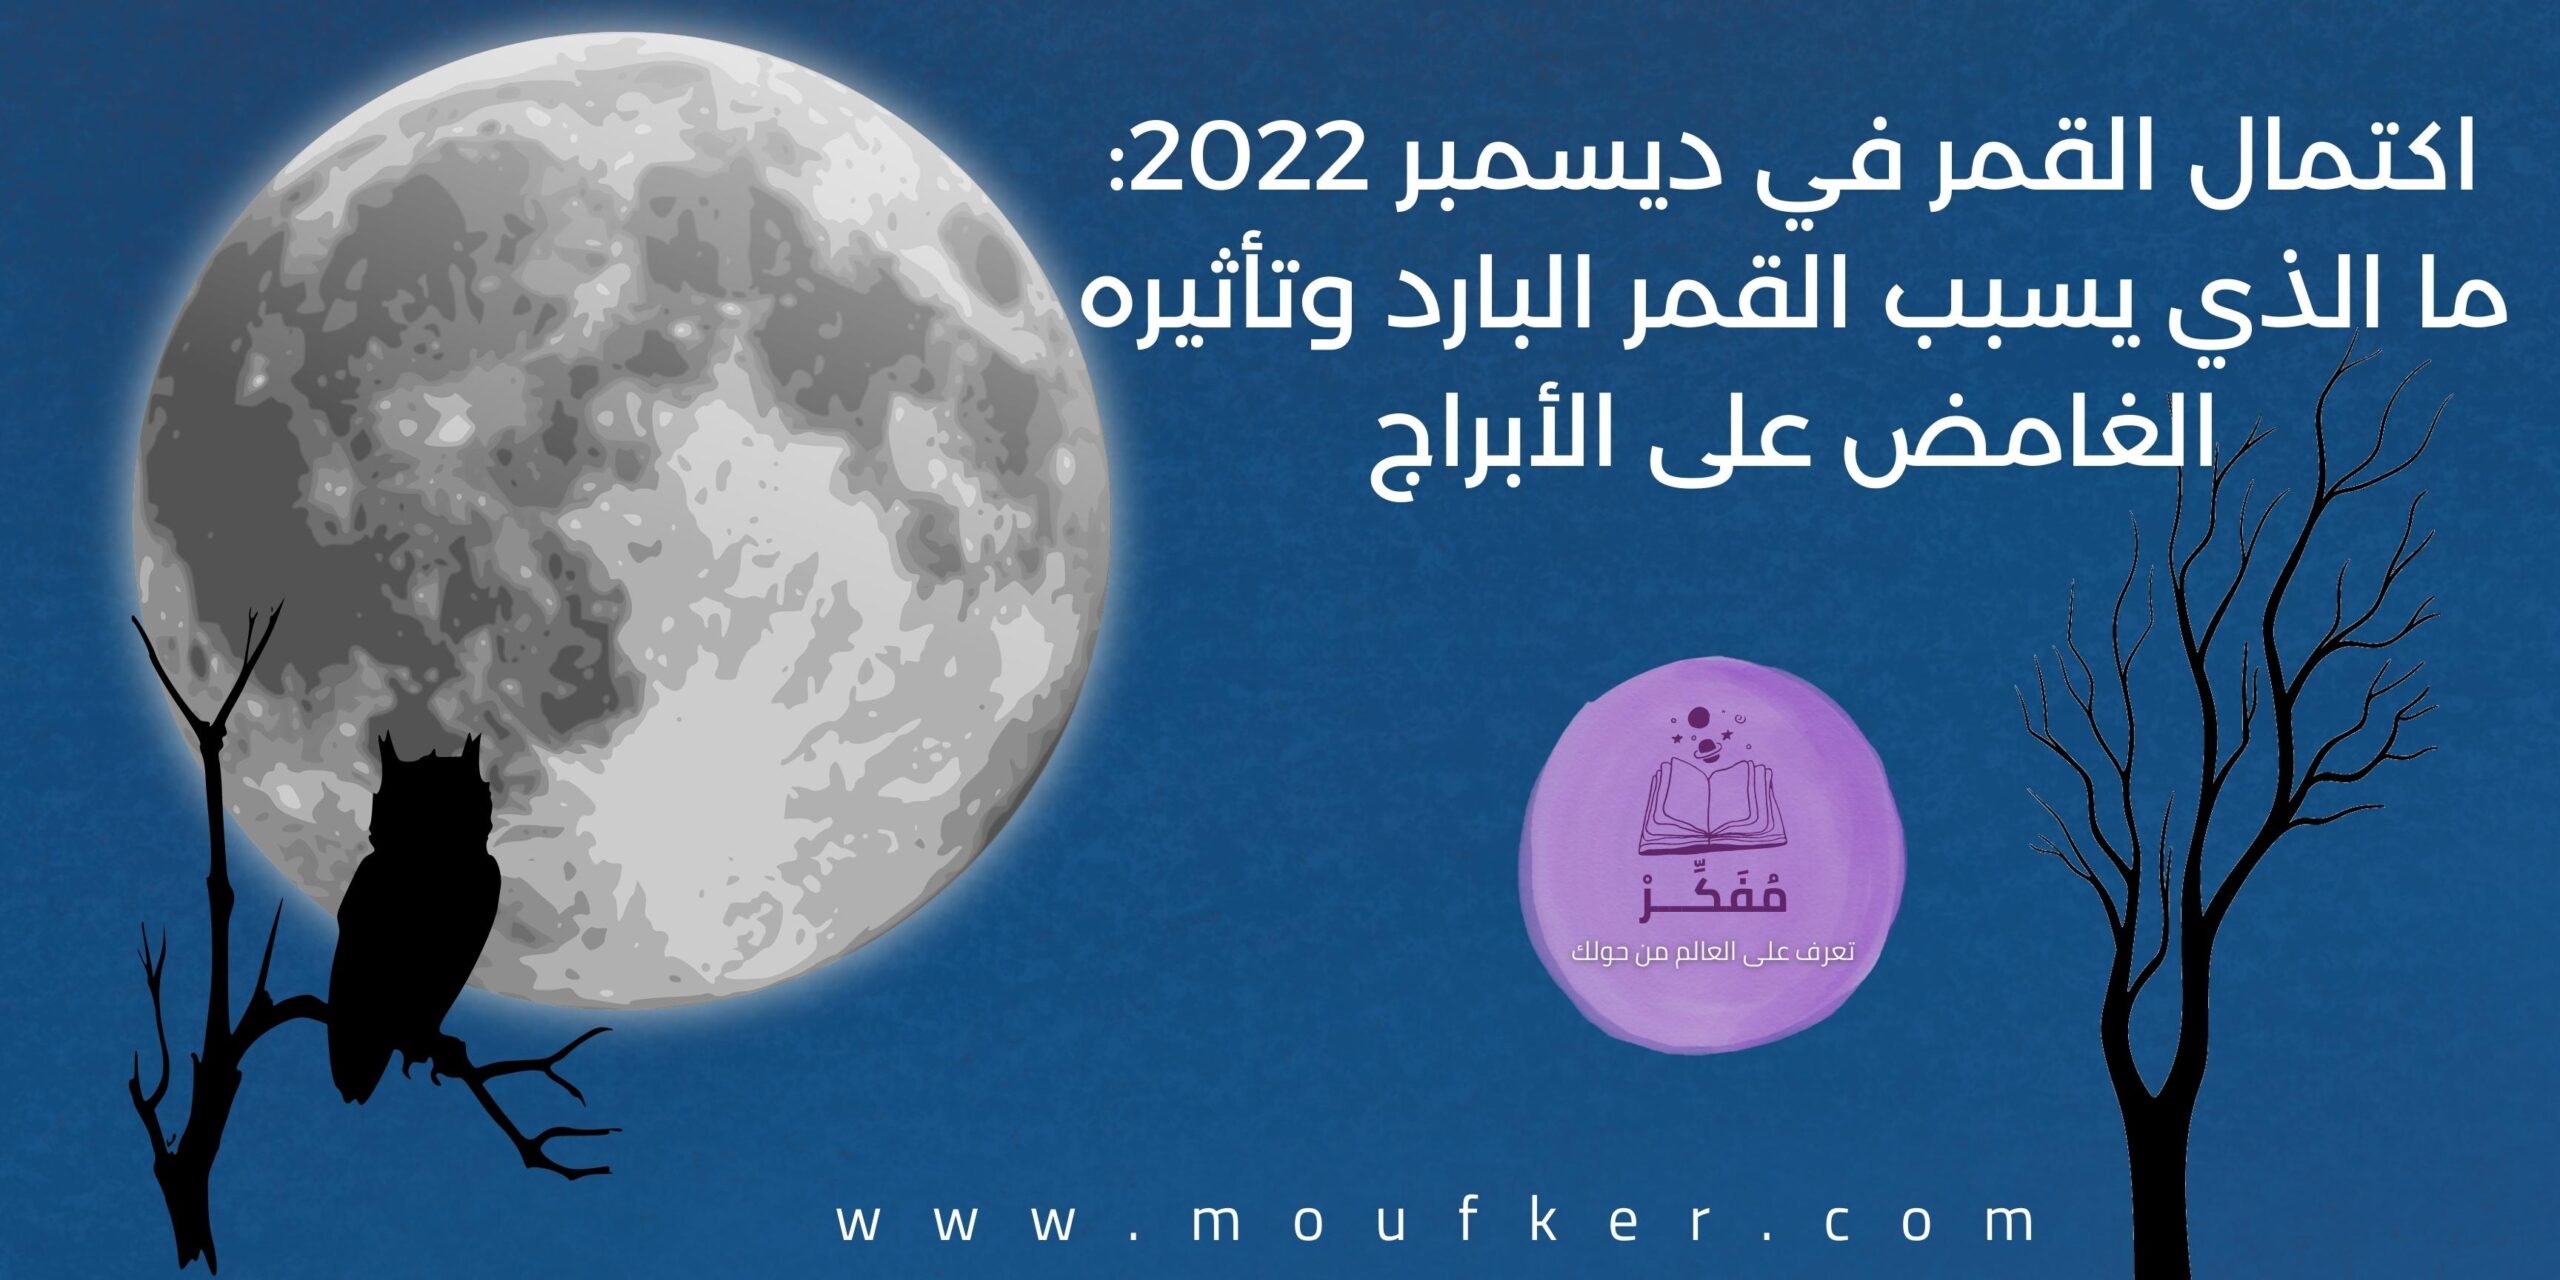 اكتمال القمر في ديسمبر 2022: ما الذي يسبب القمر البارد وتأثيره الغامض على الأبراج